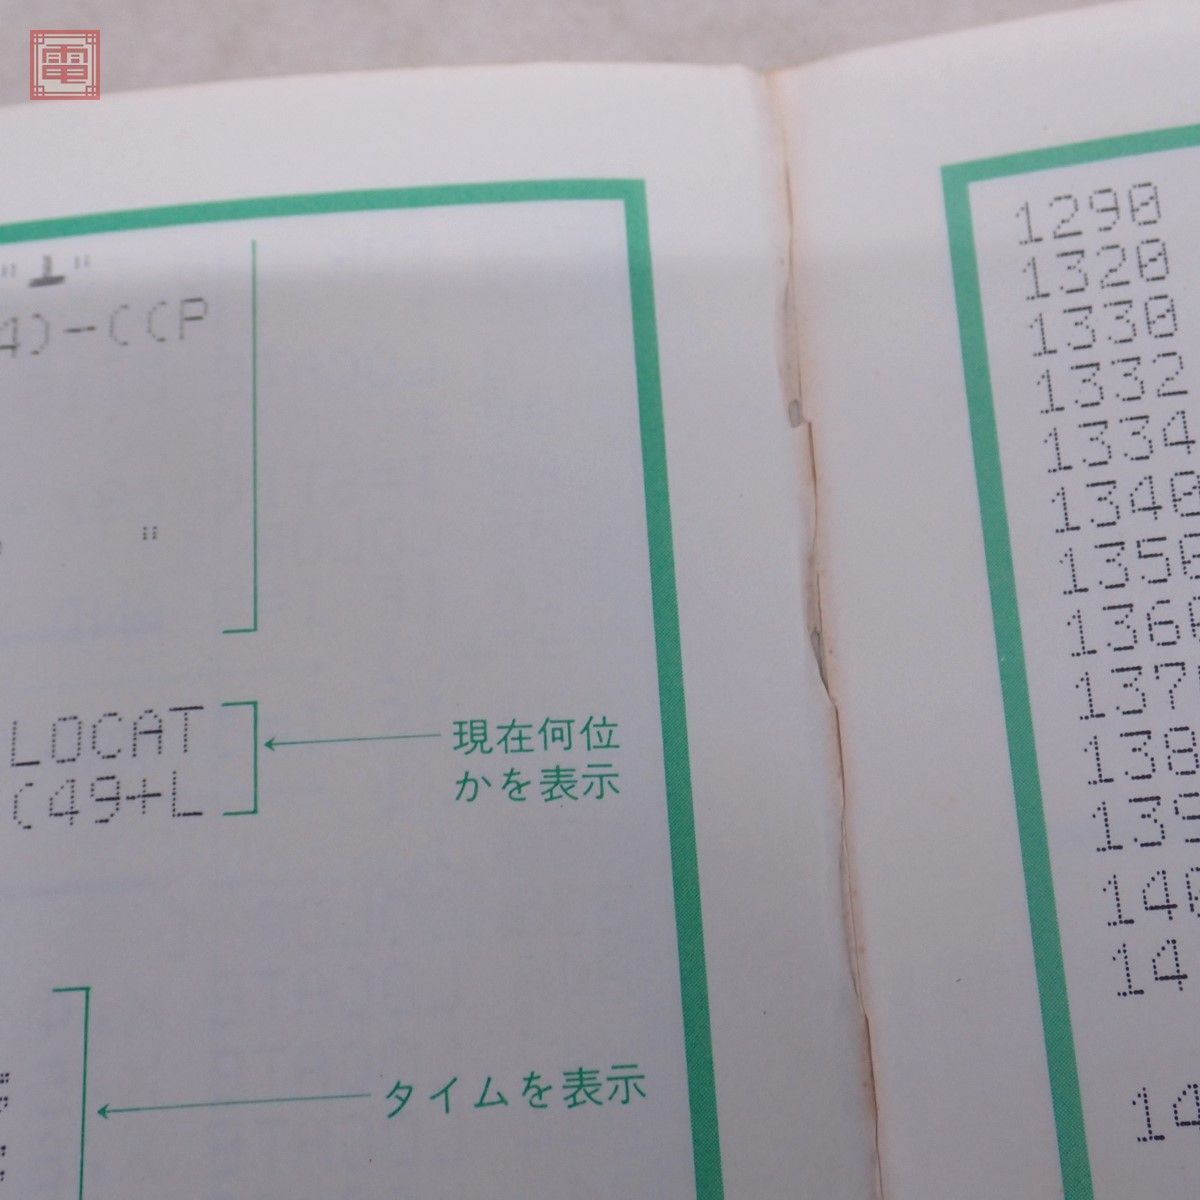 書籍 PC-6001 はるみのゲーム・ライブラリー 高橋はるみ ナツメ社【PPの画像5